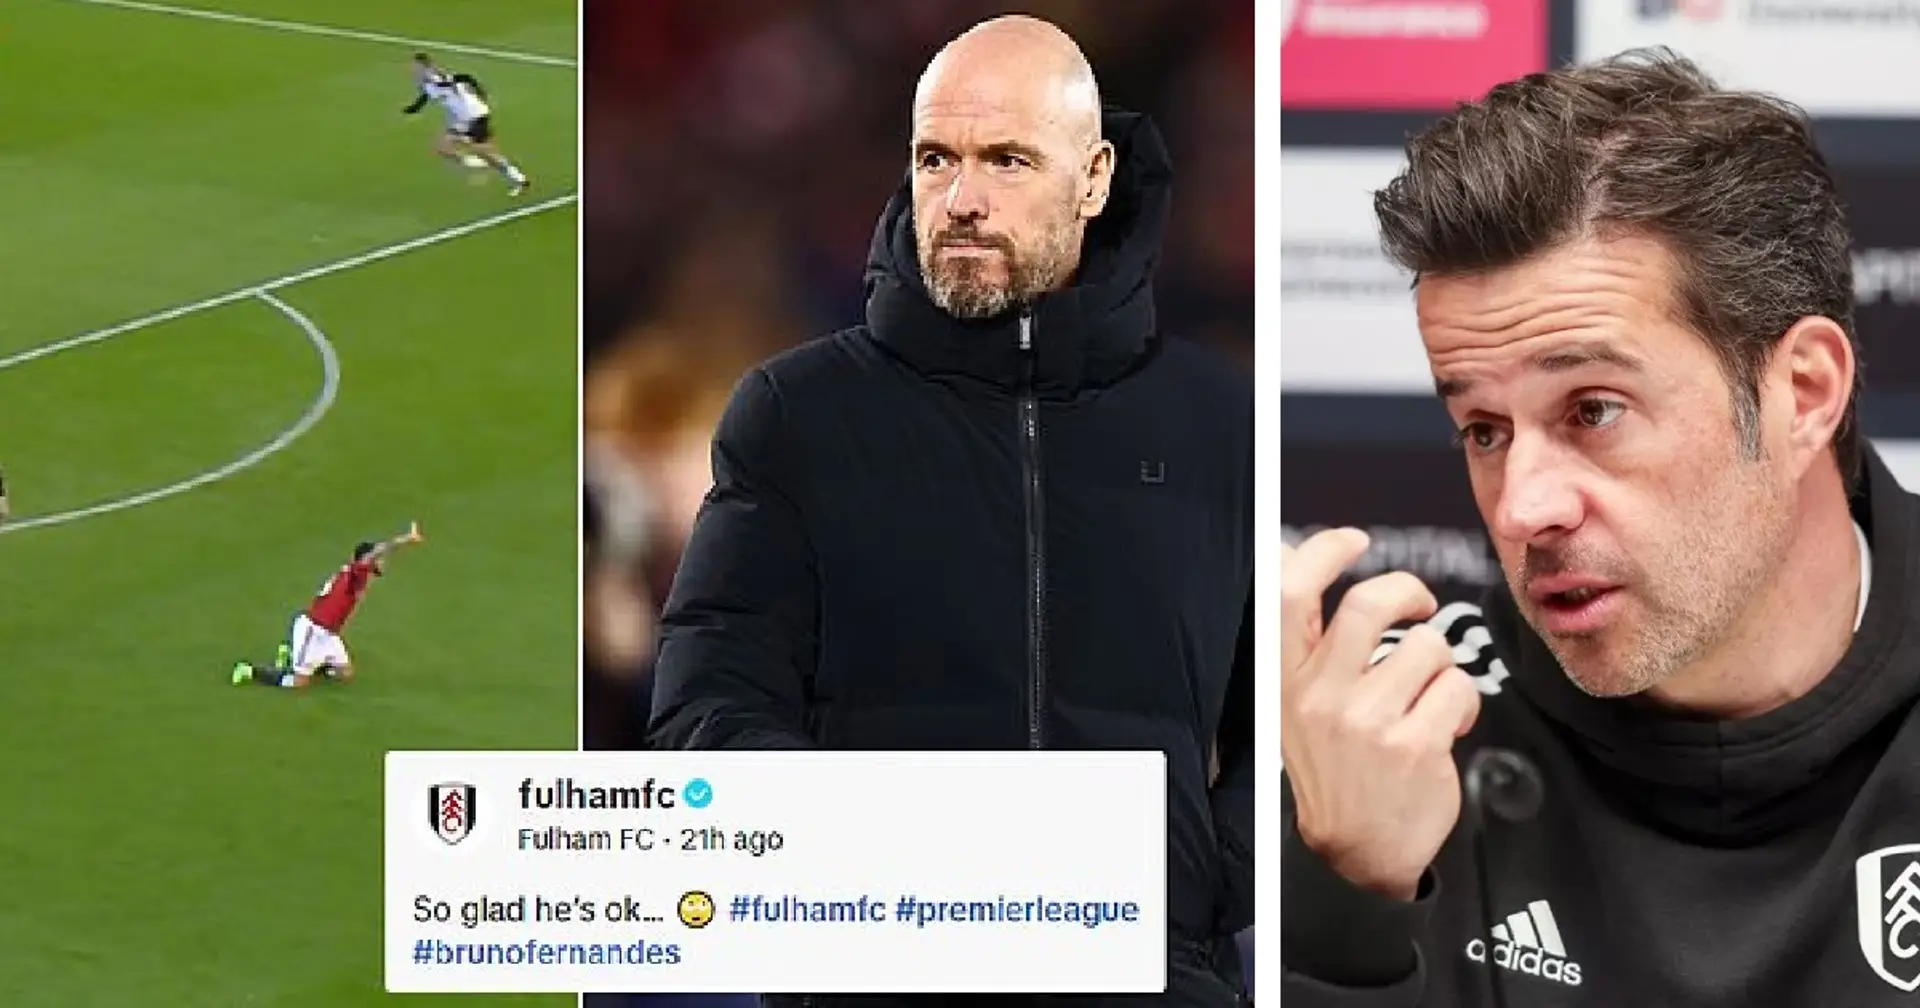 "Ten Hag défend son joueur": l'entraîneur de Fulham refuse de s'excuser pour une vidéo se moquant de Bruno Fernandes